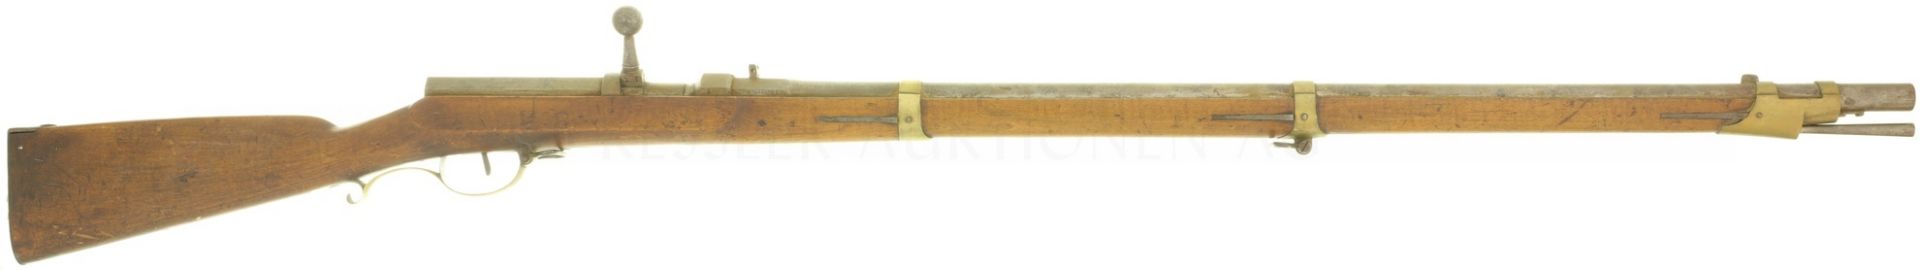 Zündnadelgewehr, Dreyse M/41, Kal. 15.6mm